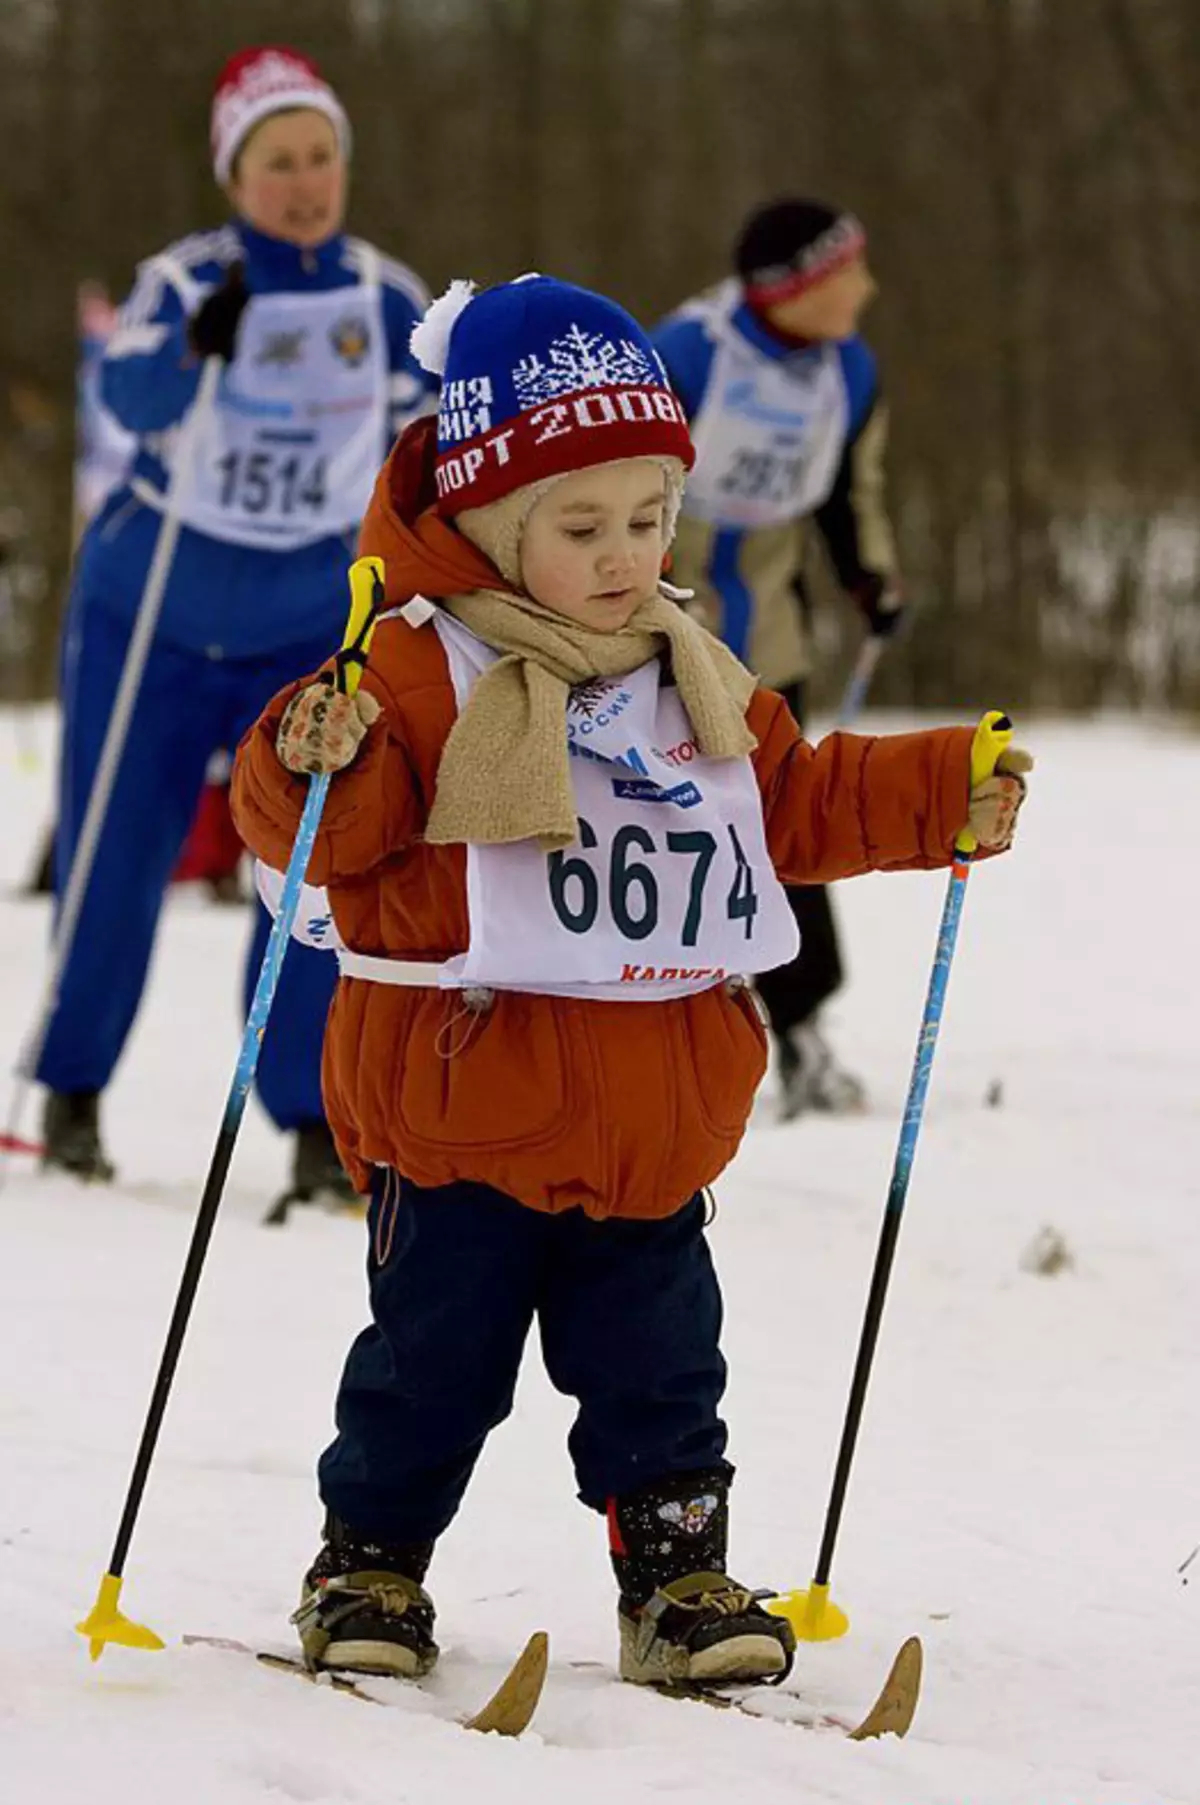 Маленькие лыжники. Дети на лыжах. Лыжный спорт дети. Детский лыжный спорт. Горнолыжный спорт дети.